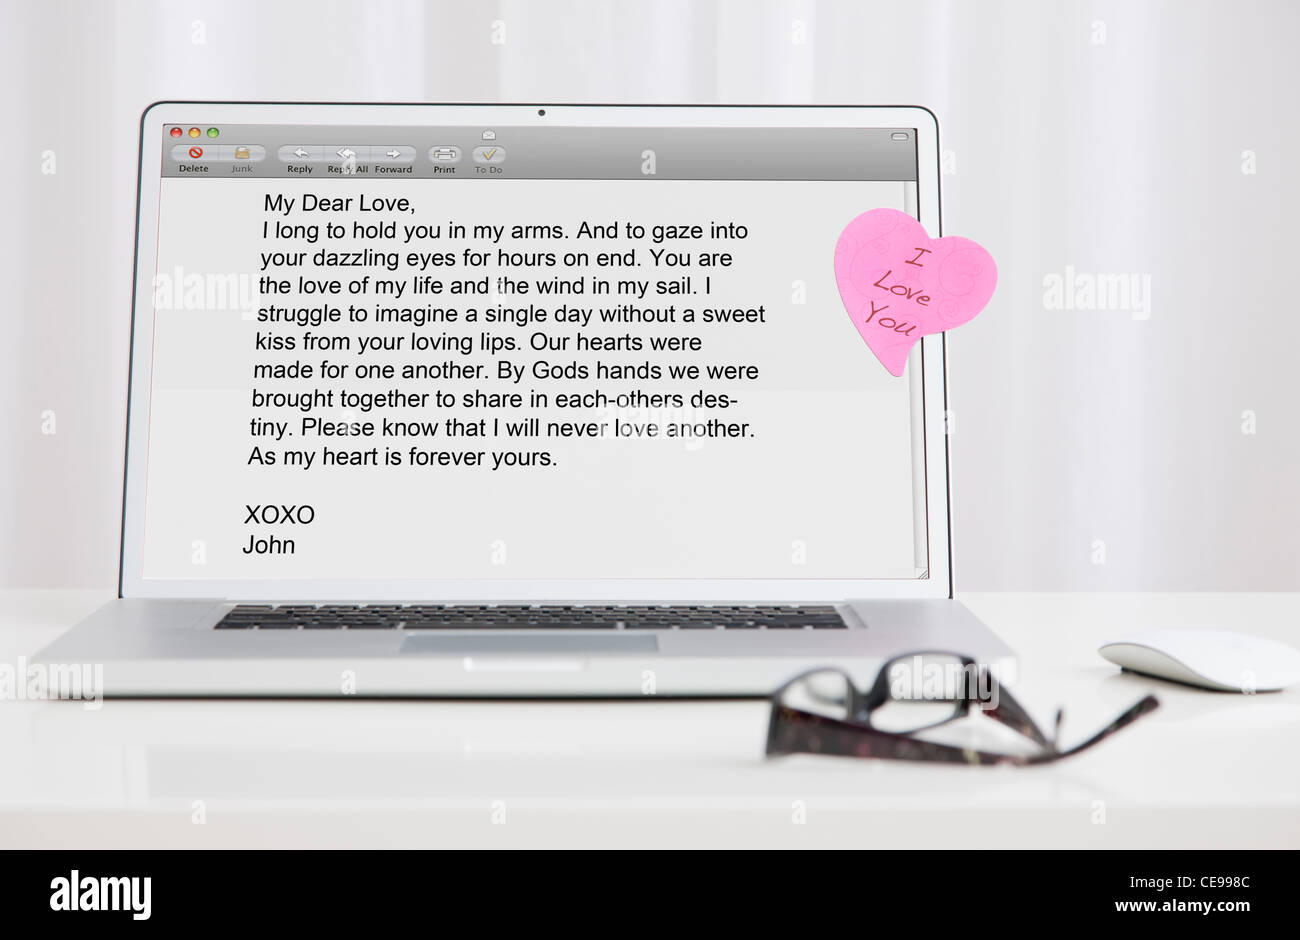 USA, Illinois, Metamora, Love letter on laptop screen Stock Photo